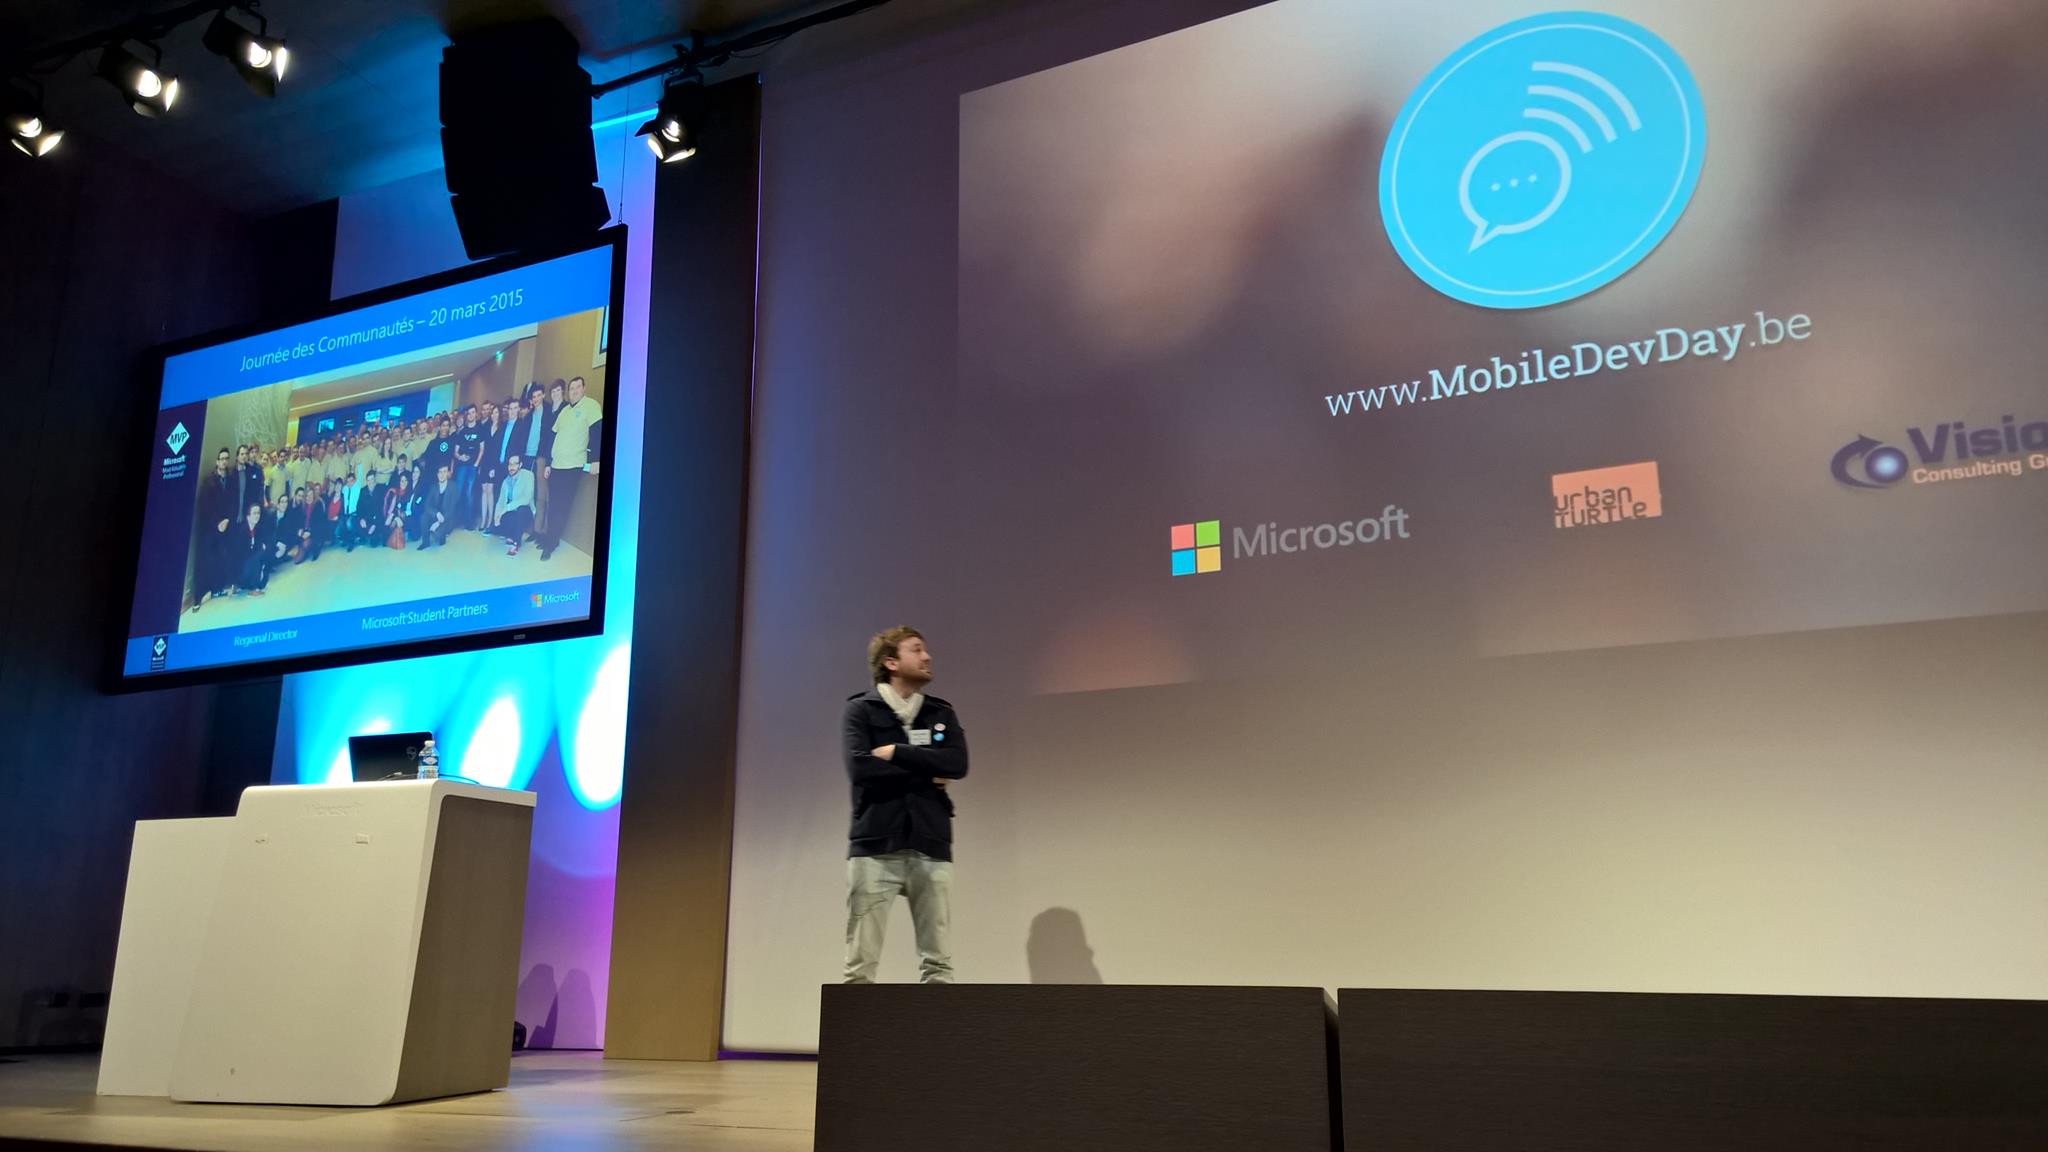 Retour d'expérience sur l'organisation du Mobile Dev Day à l'occasion de la Journée des Communautés 2015 chez Microsoft France